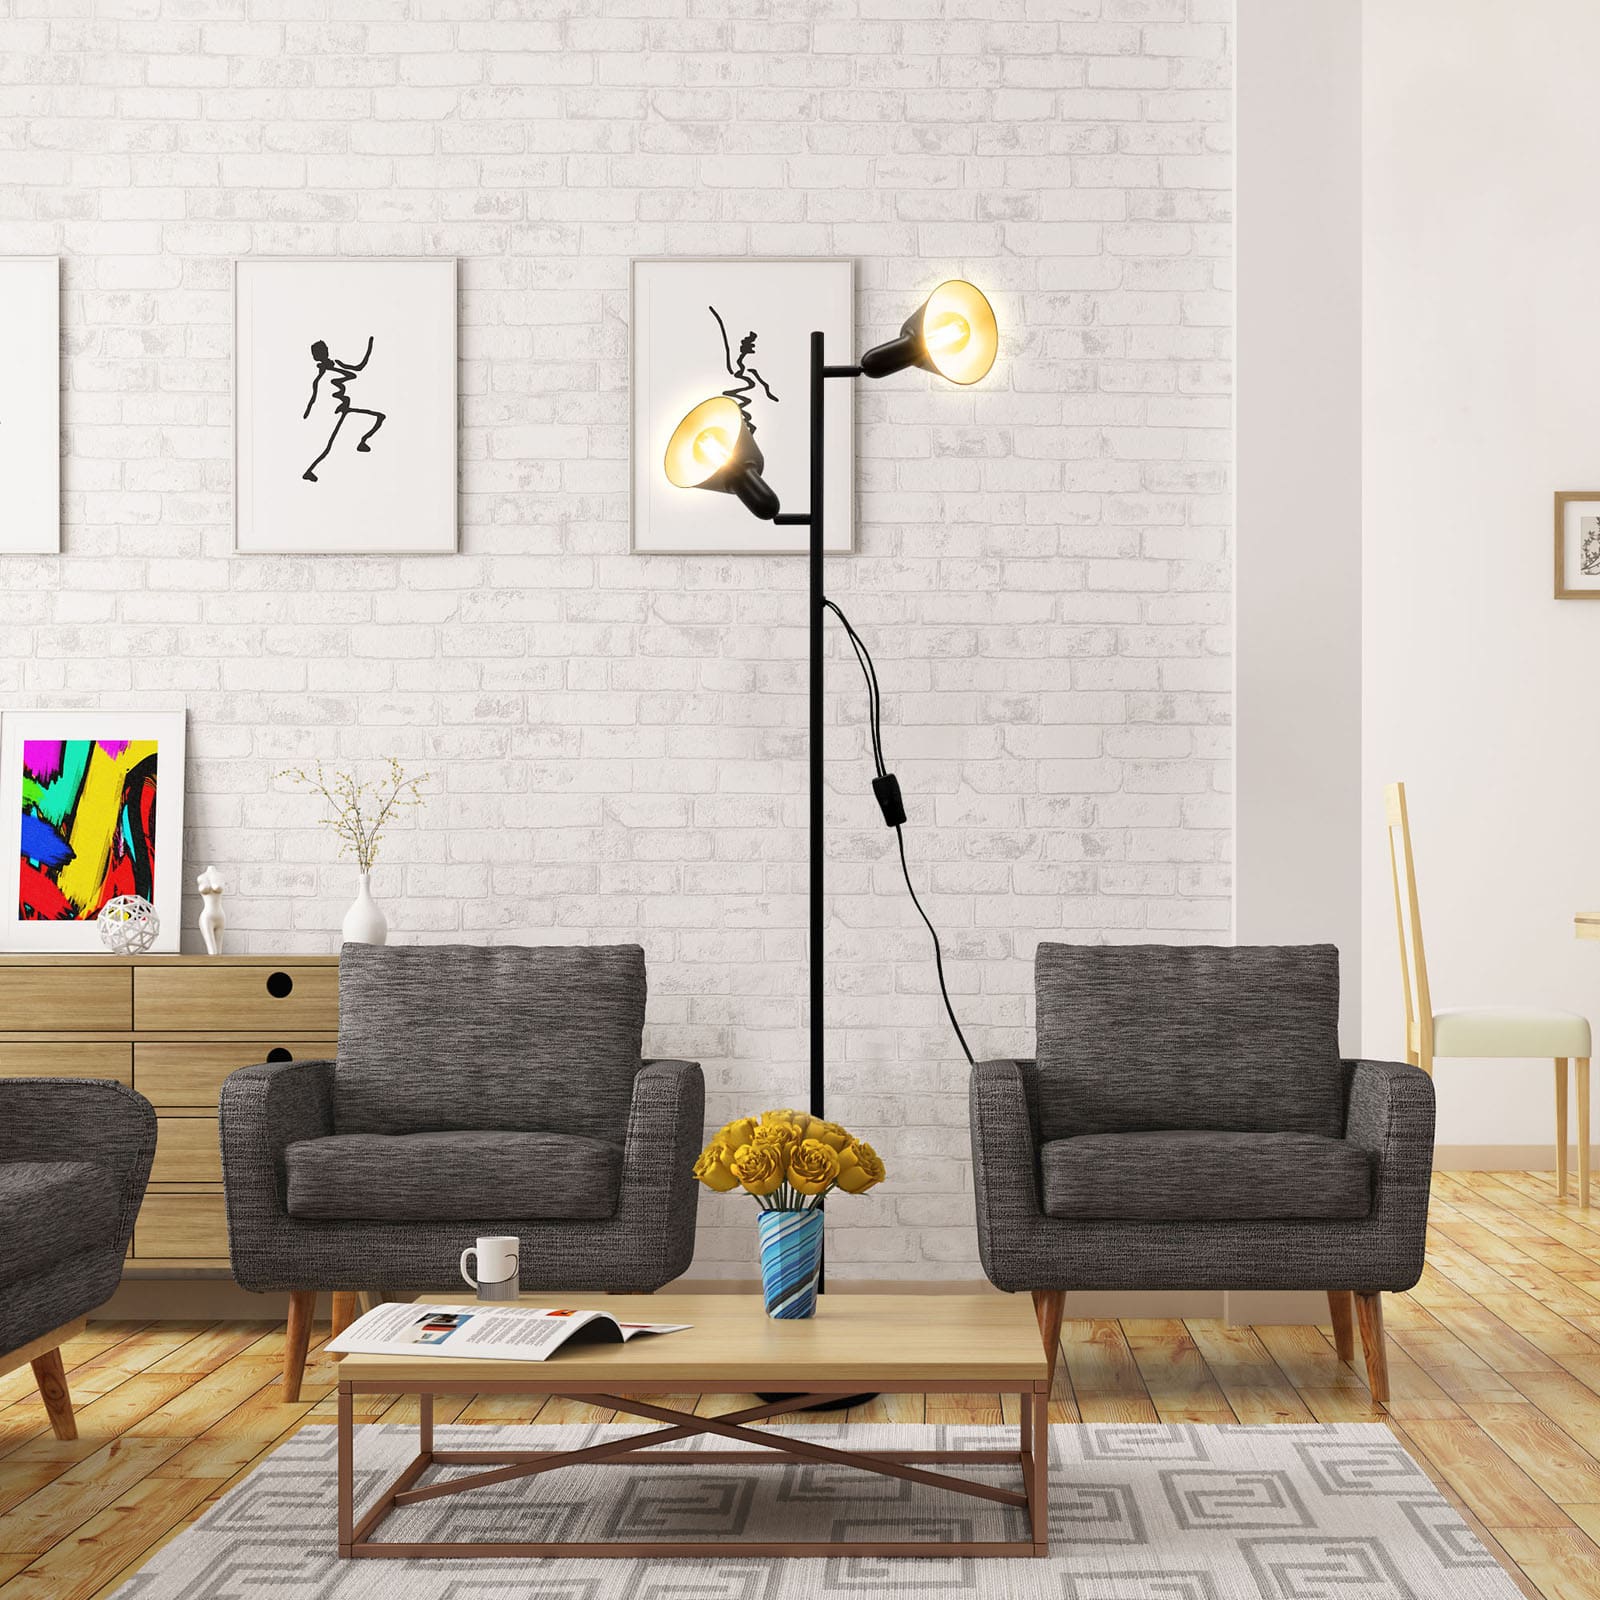 Stehlampe Wohnzimmer 142x19cm - 2-flammig - Metall-Stehleuchte 230V mit Kabelschalter Industrial Design Spots schwenkbar Fassung E27 LED max 10W Schlafzimmer | schwarz-gold - 5